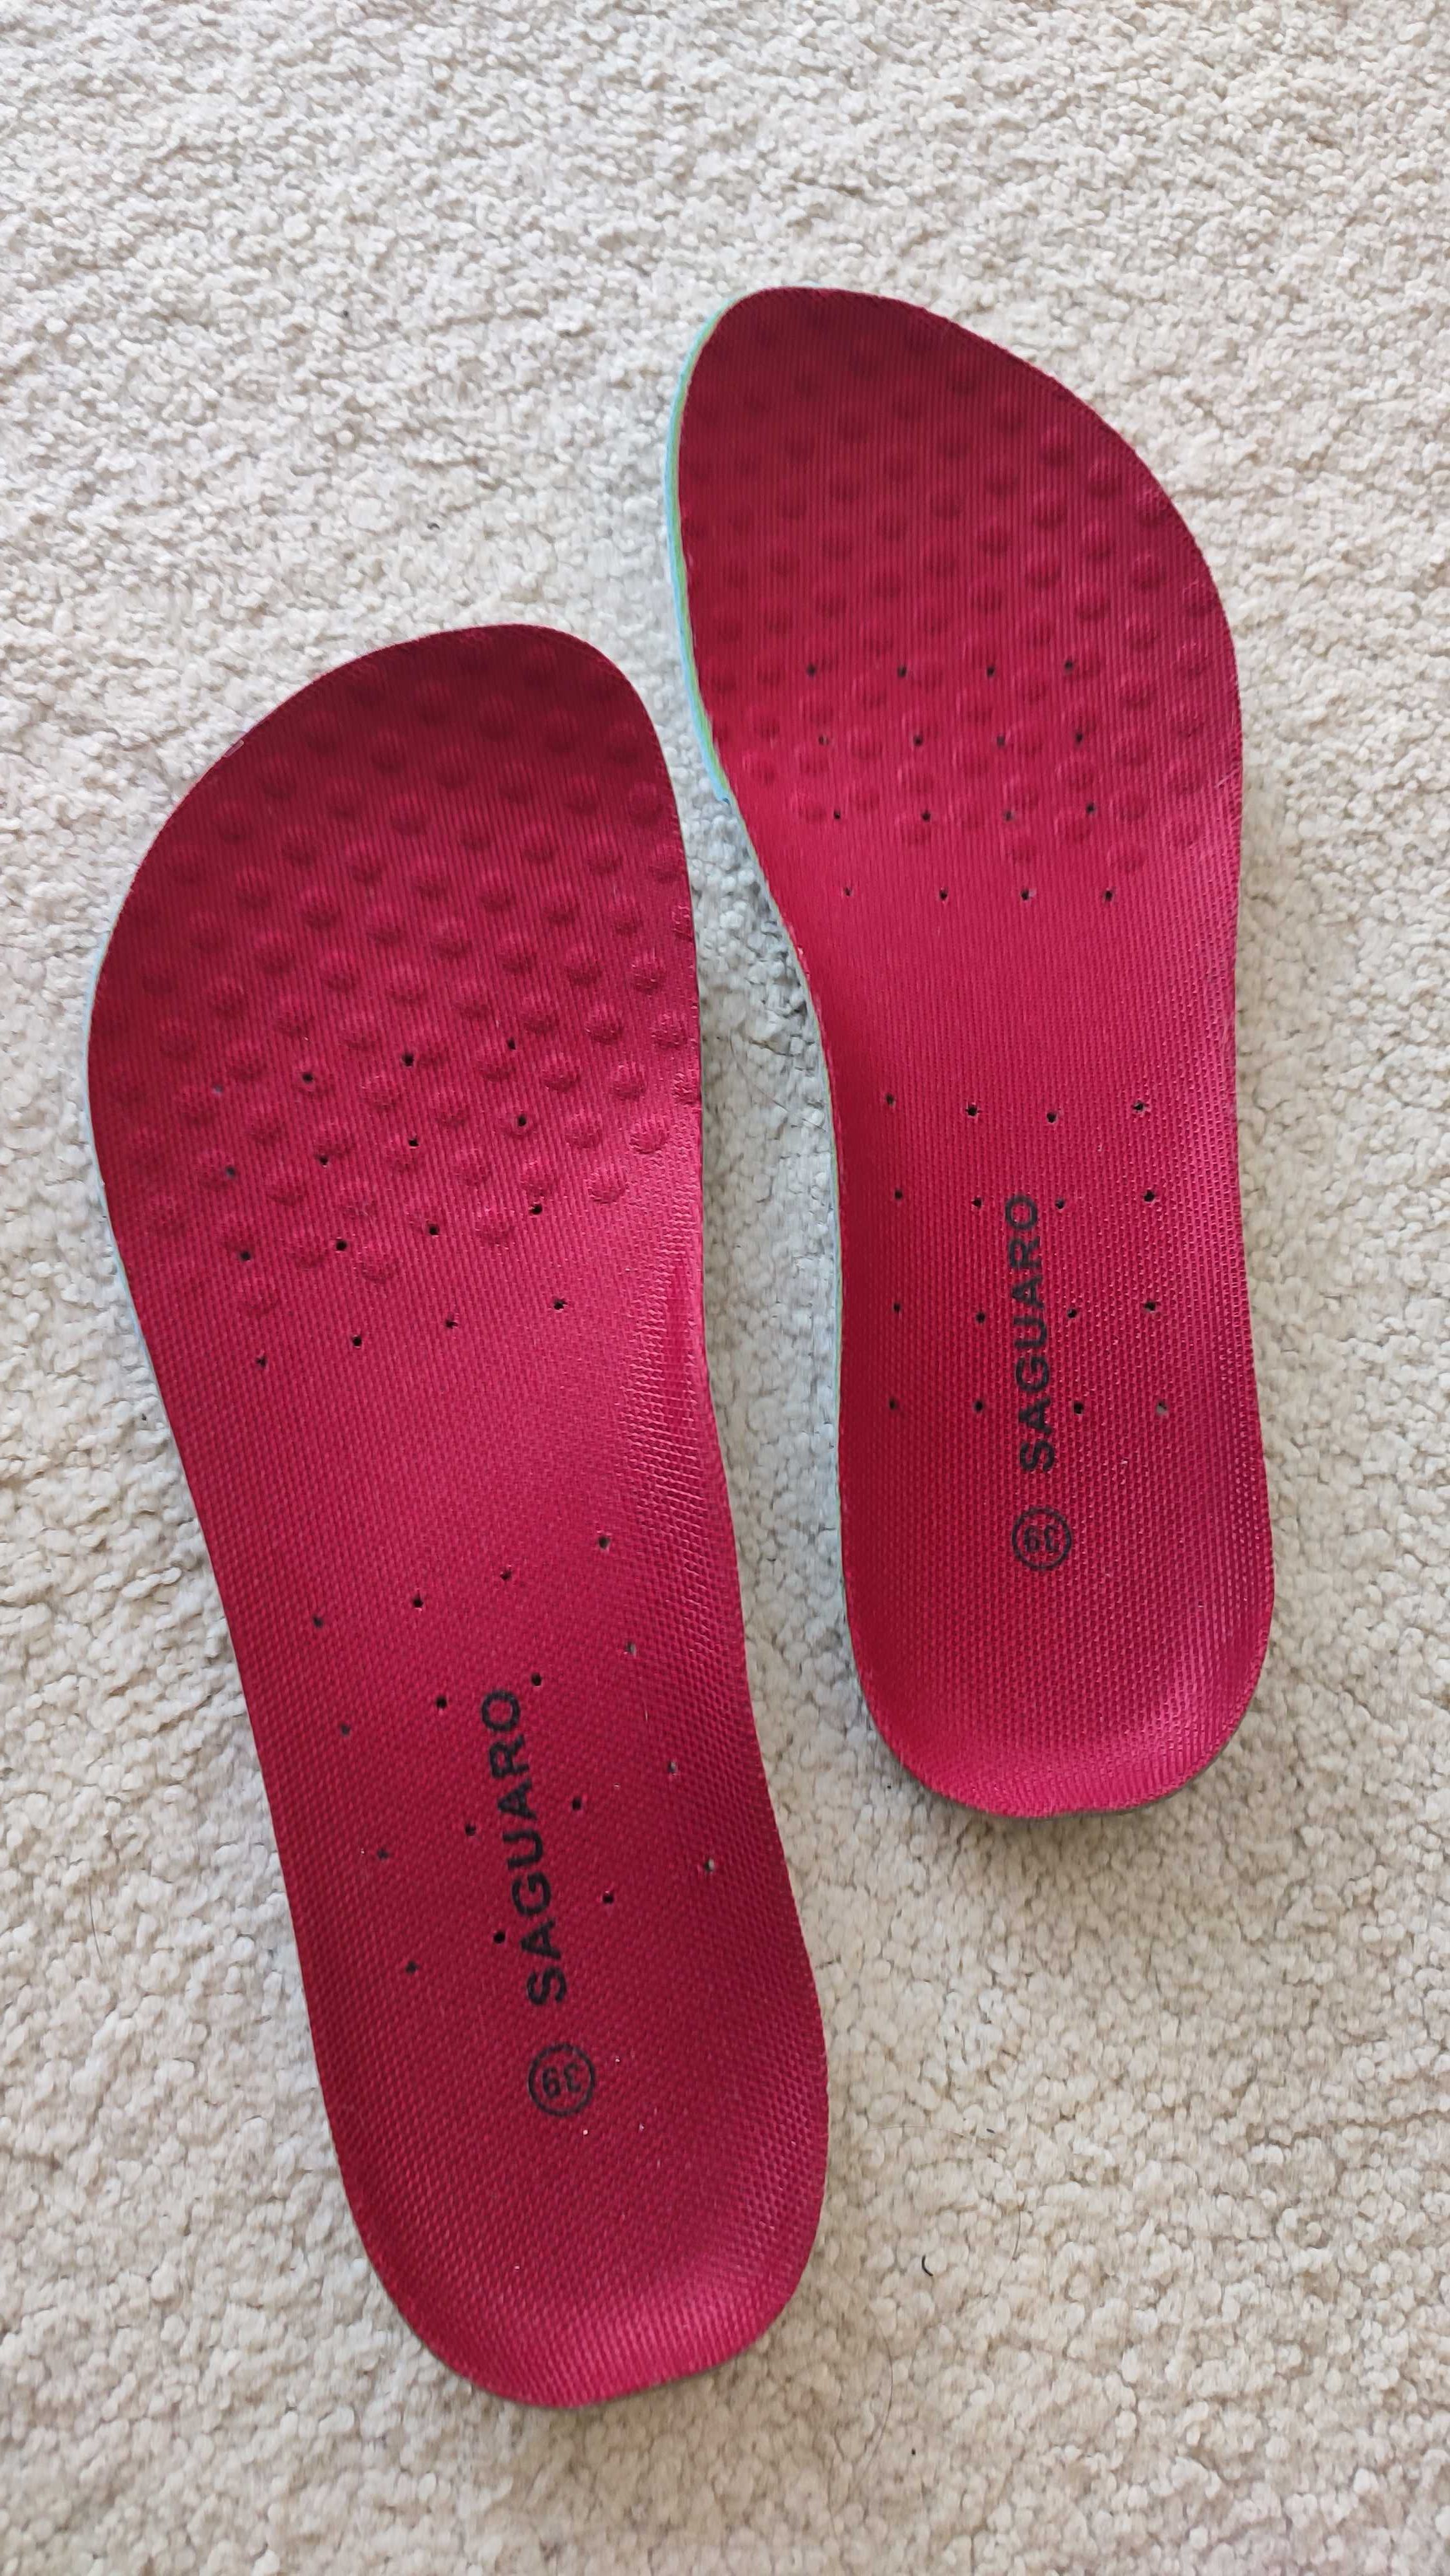 Saguaro Fast buty barefoot dla biegaczy na siłownię nowe rozm 39